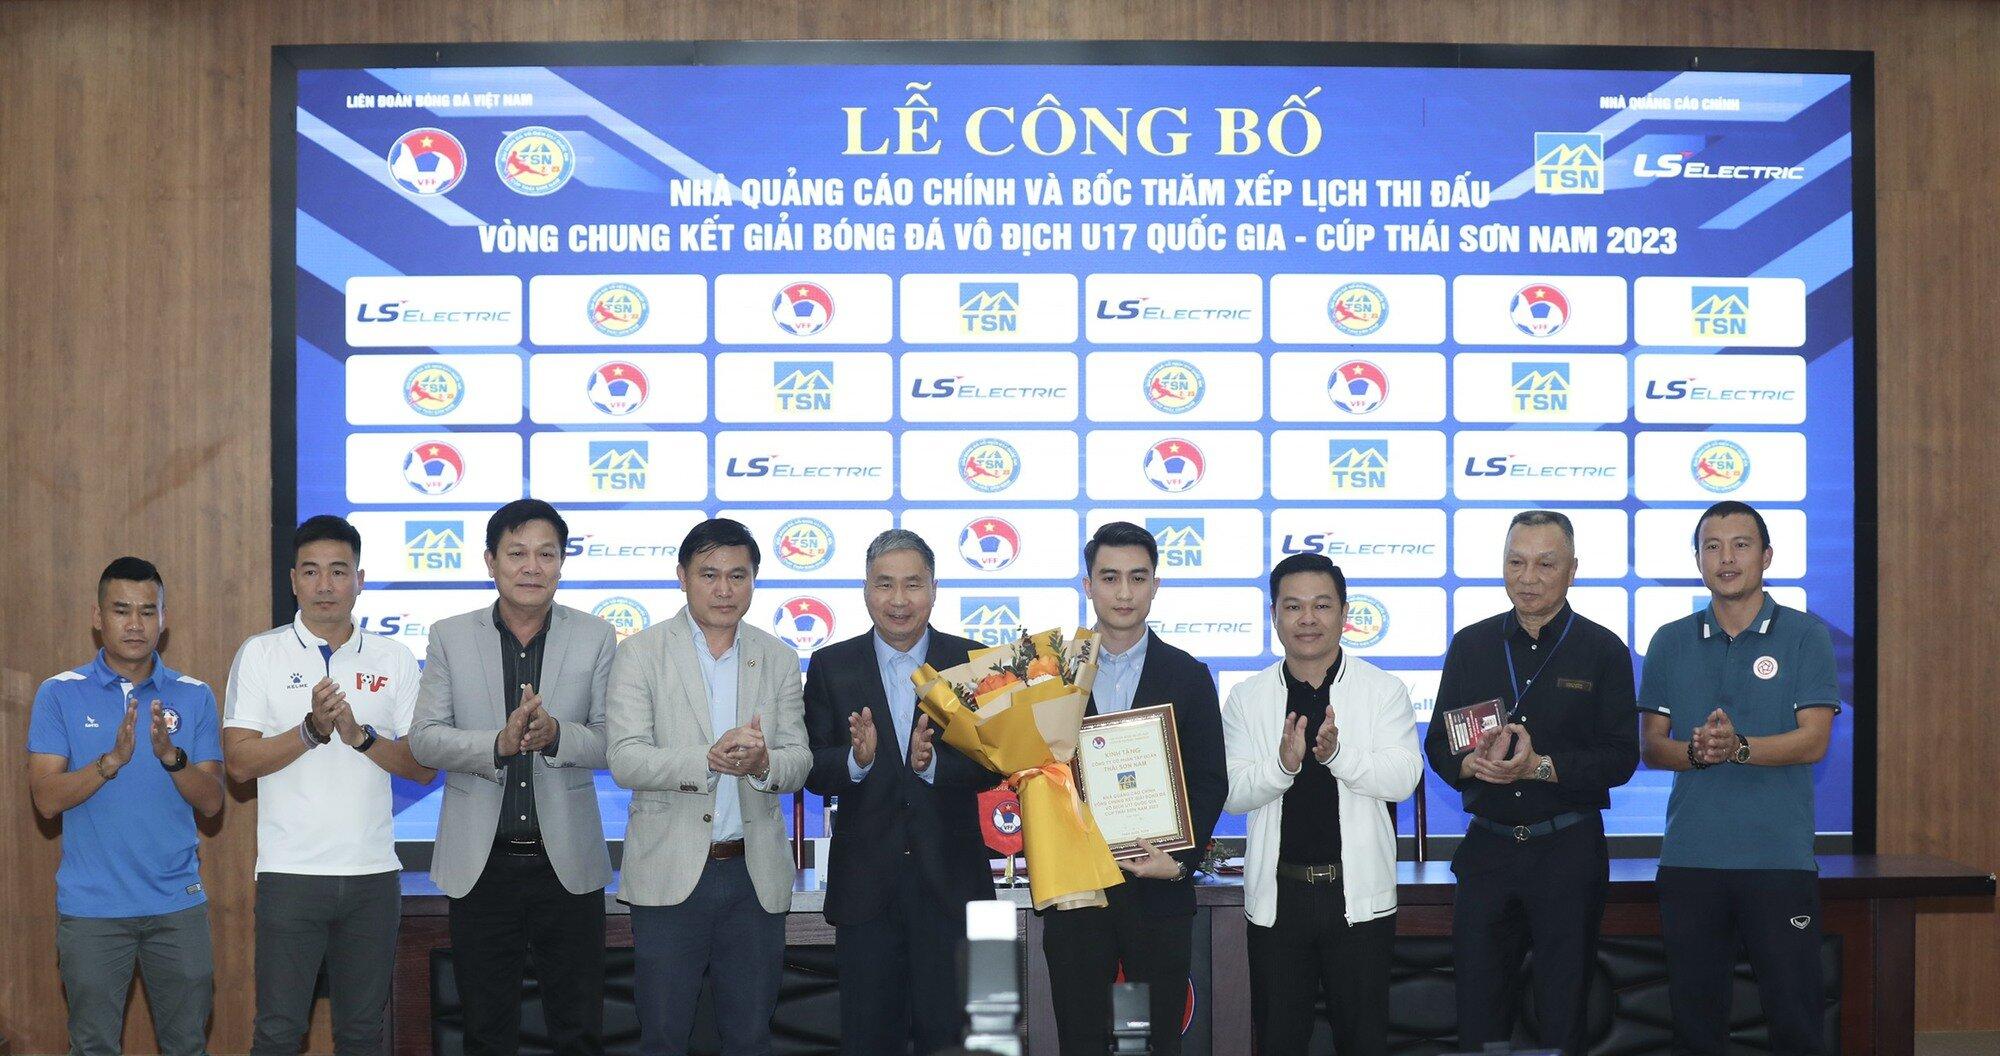 Chiều 6/3, Liên đoàn bóng đá Việt Nam tổ chức Lễ công bố nhà tài trợ quảng cáo chính và Bốc thăm xếp lịch VCK Giải bóng đá Vô địch U17 Quốc gia năm 2023. (Ảnh: Internet)